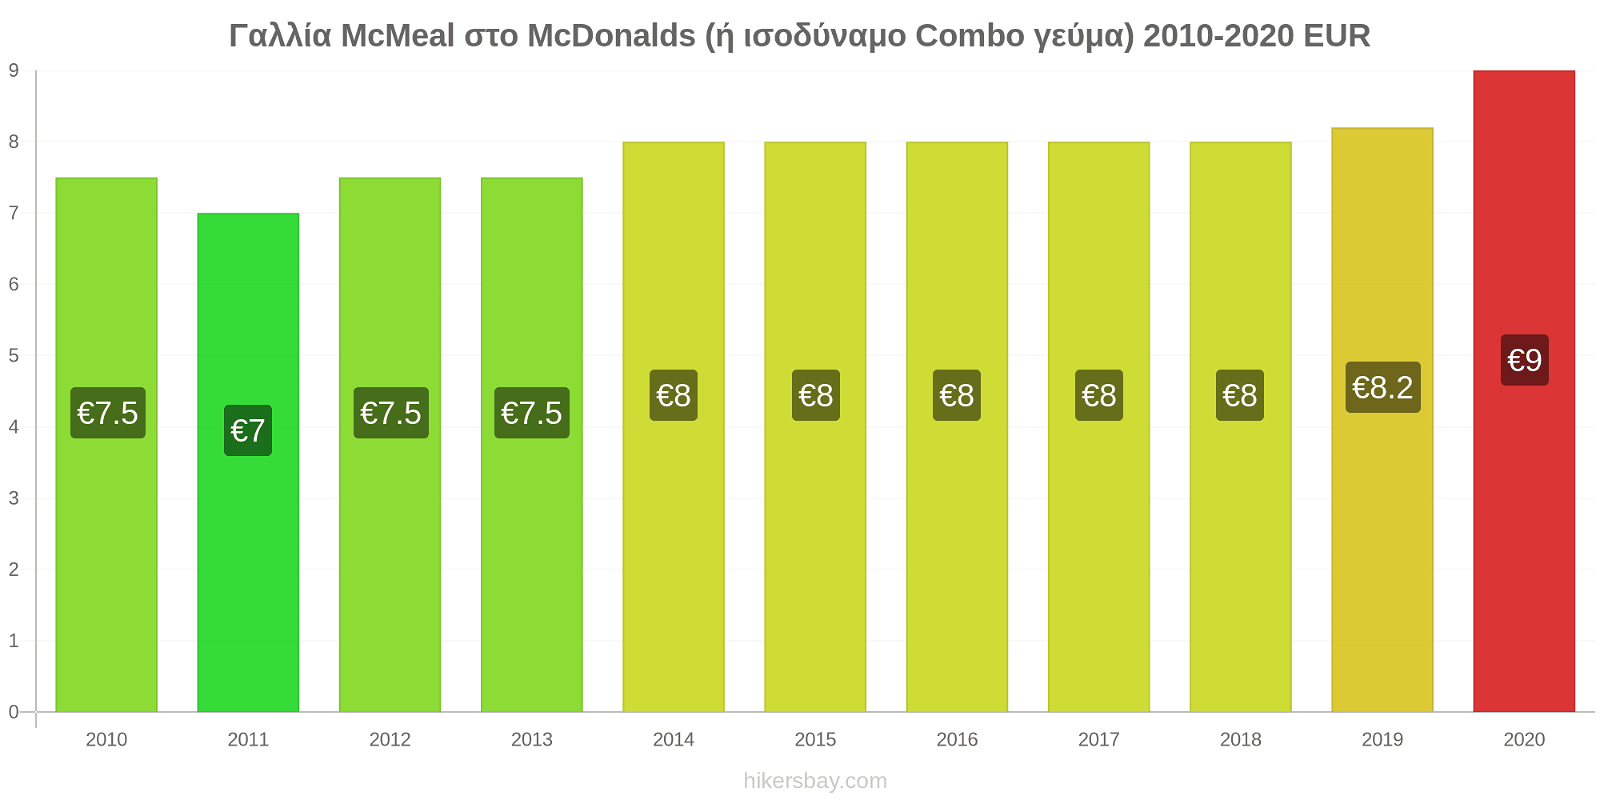 Γαλλία αλλαγές τιμών McMeal στο McDonalds (ή ισοδύναμο Combo γεύμα) hikersbay.com